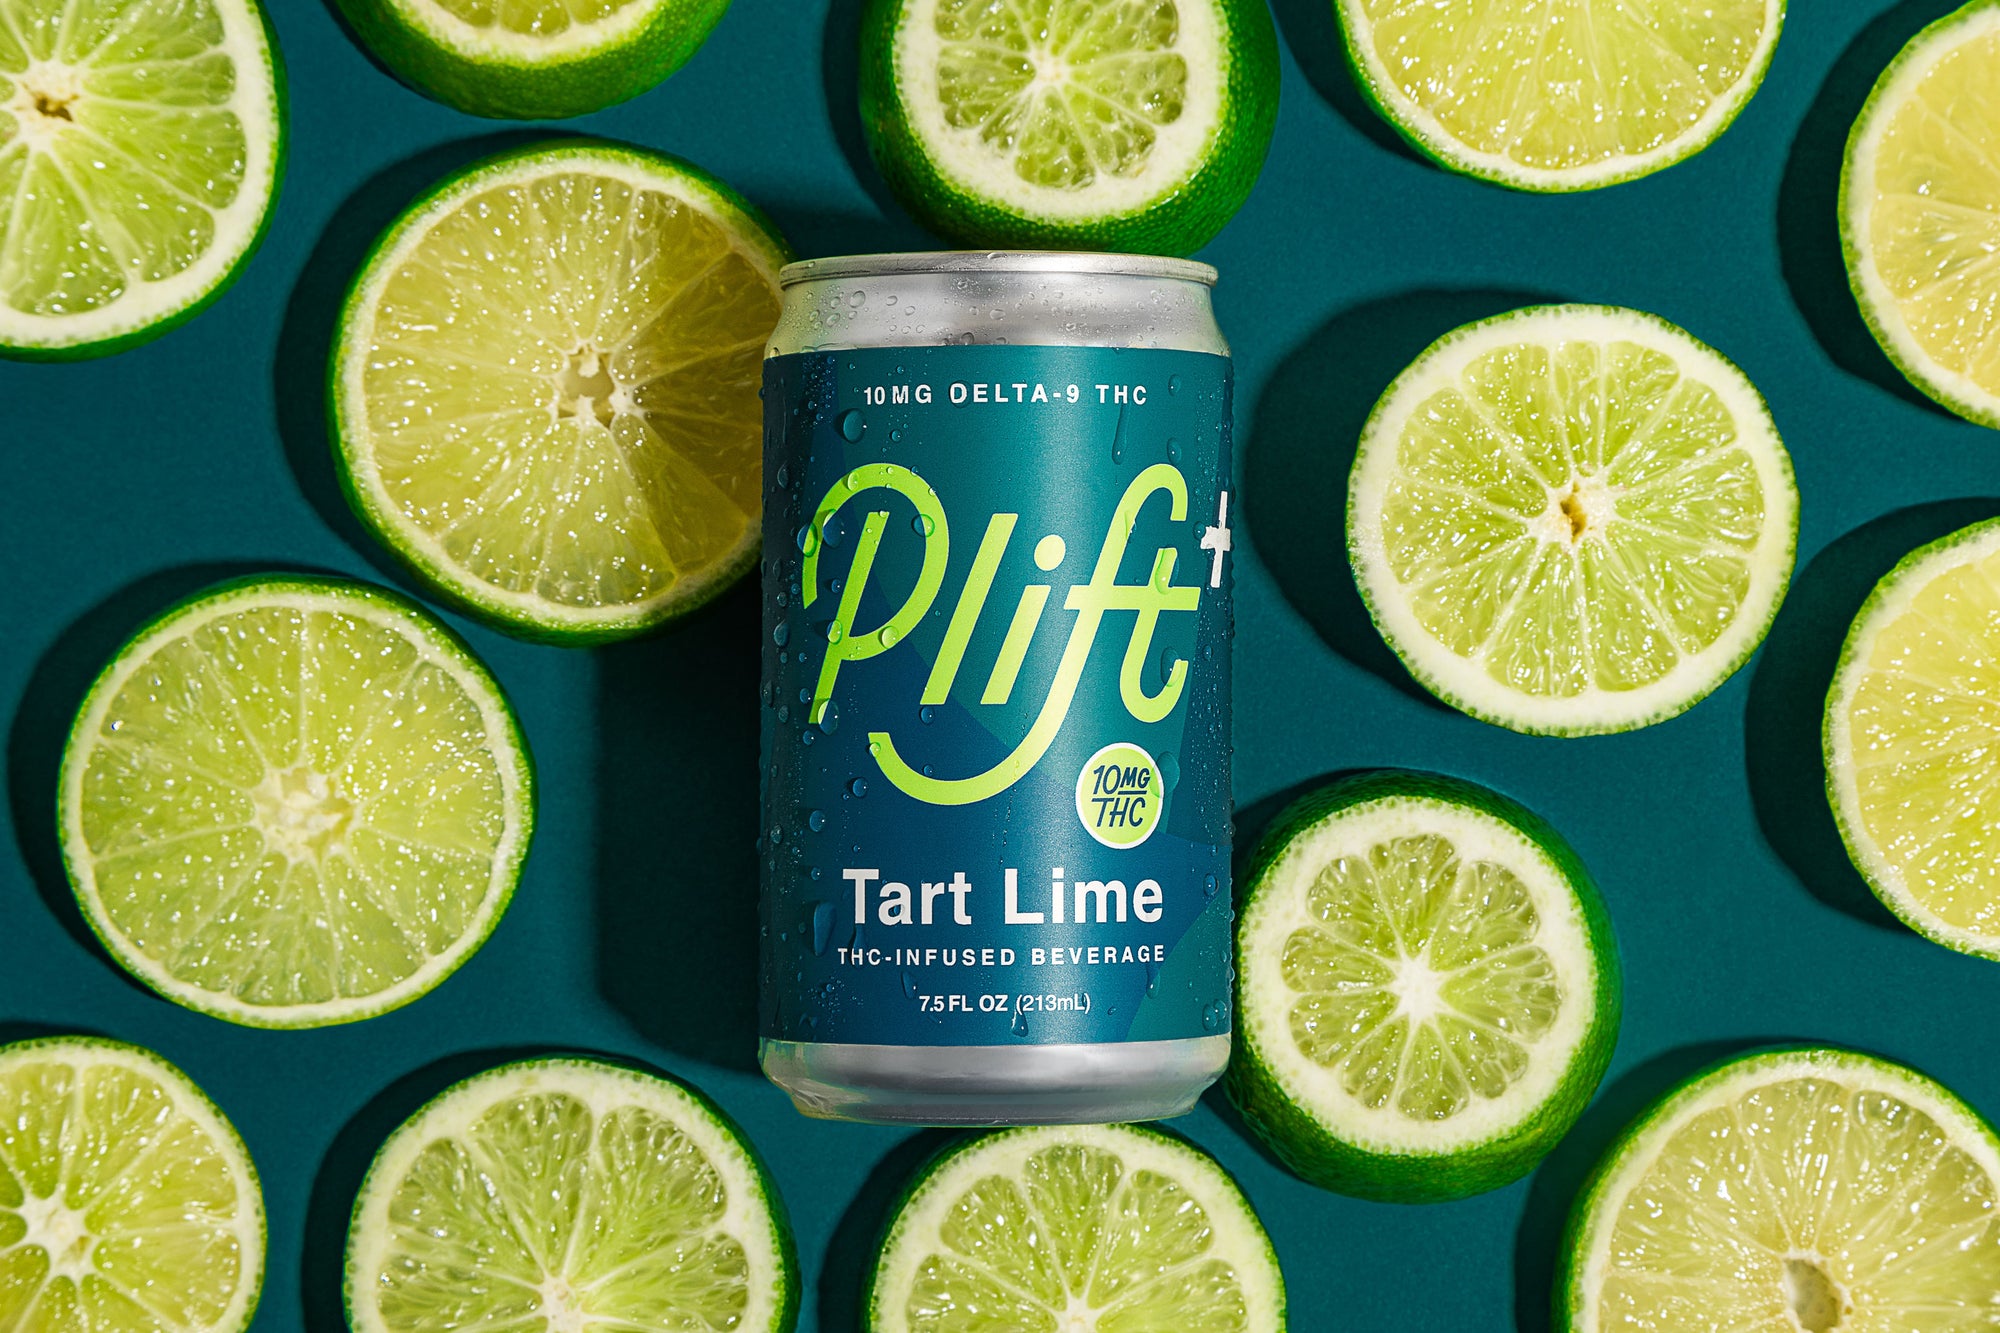 Plift (4mg THC) - Tart Lime 12pk